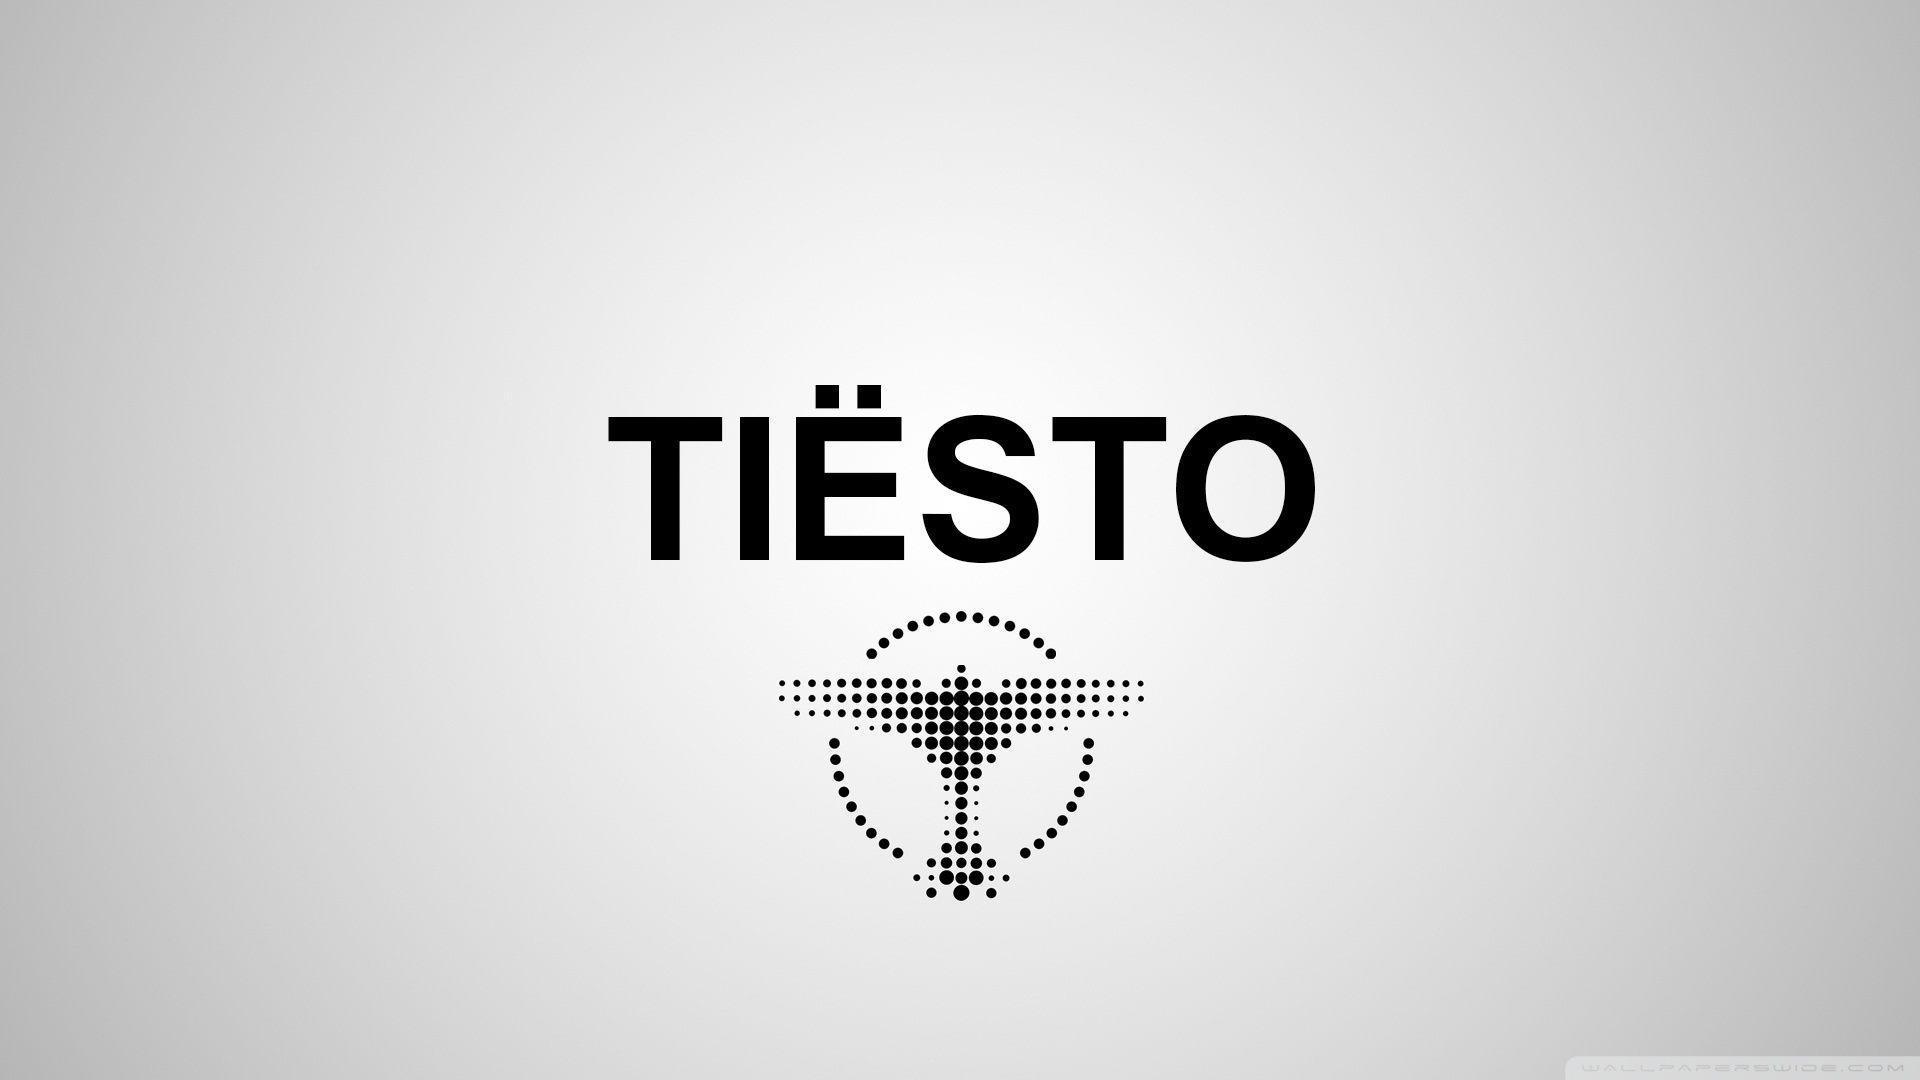 Music Wallpaper.com: Tiesto Desktop Background Wallpaper